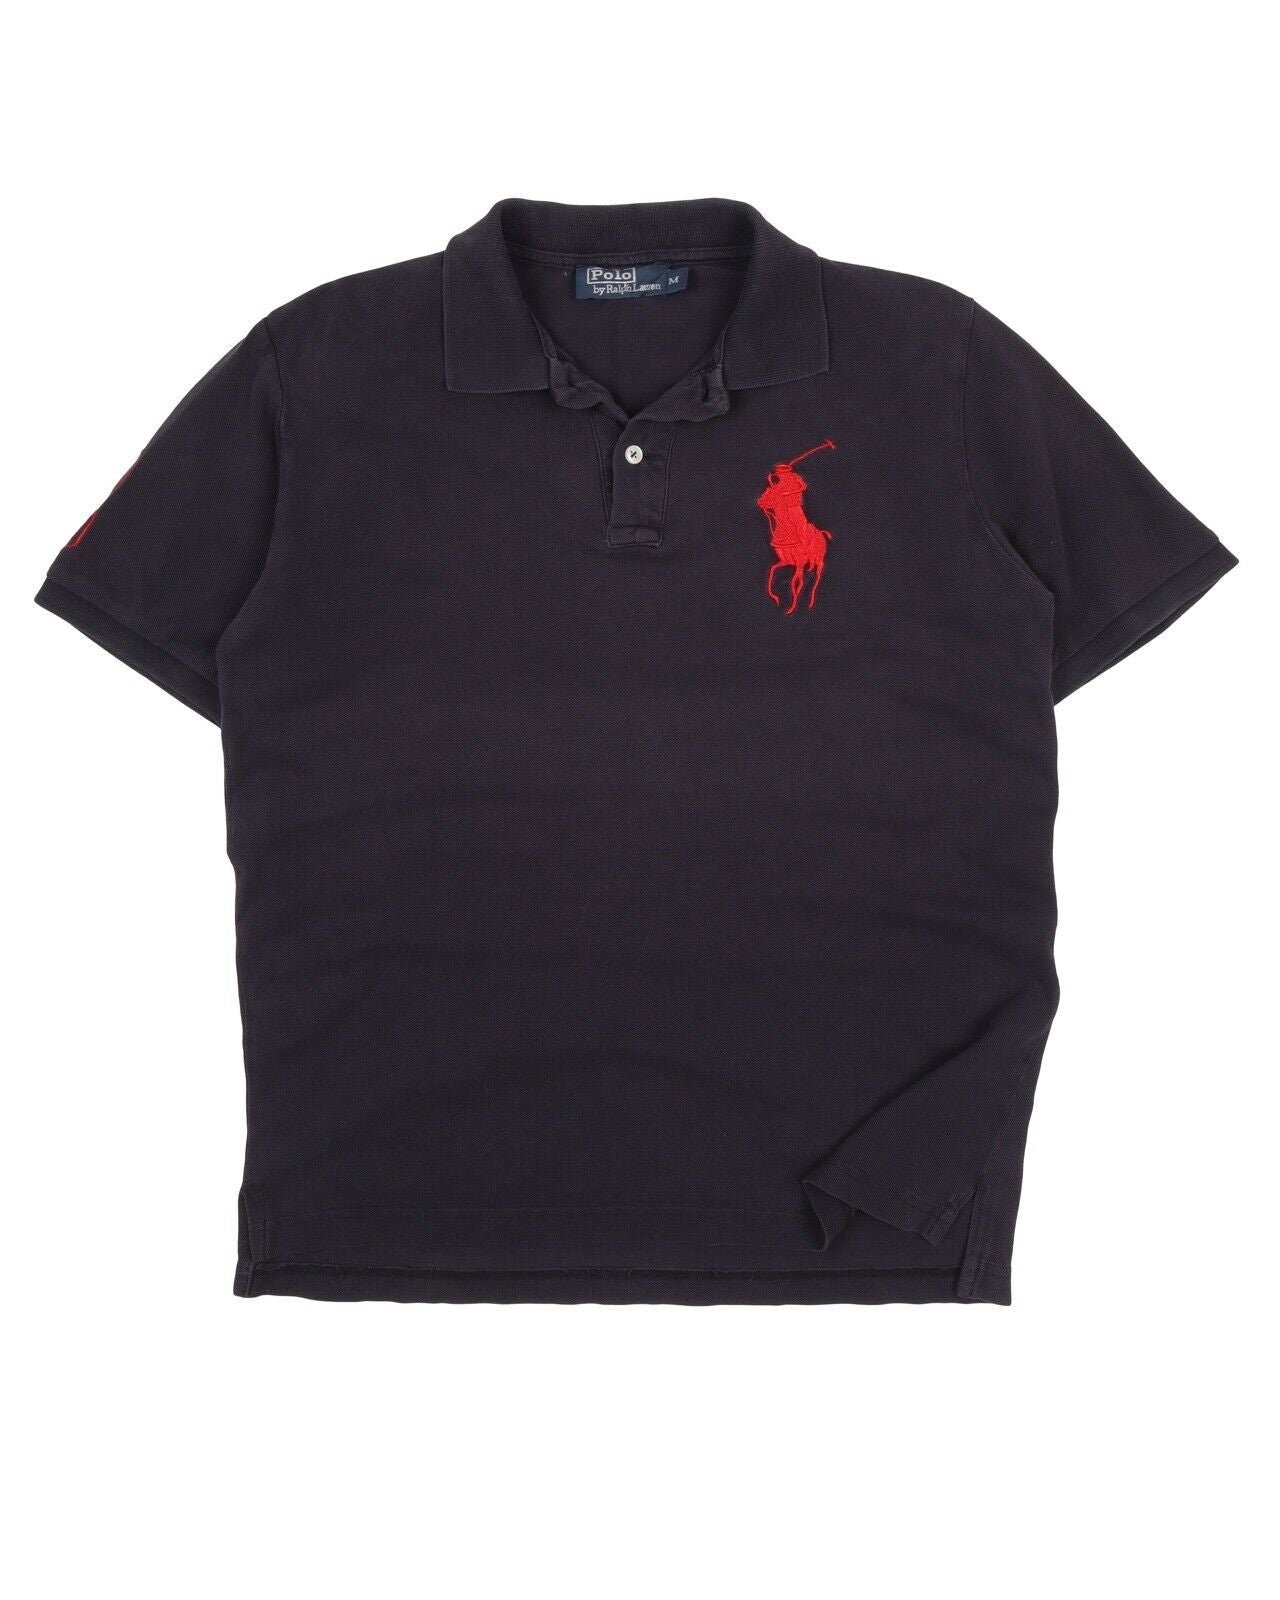 Polo RALPH LAUREN Men's Gray Pique Cotton Big Pony Polo Shirt Size M  Authentic Designer Wear 